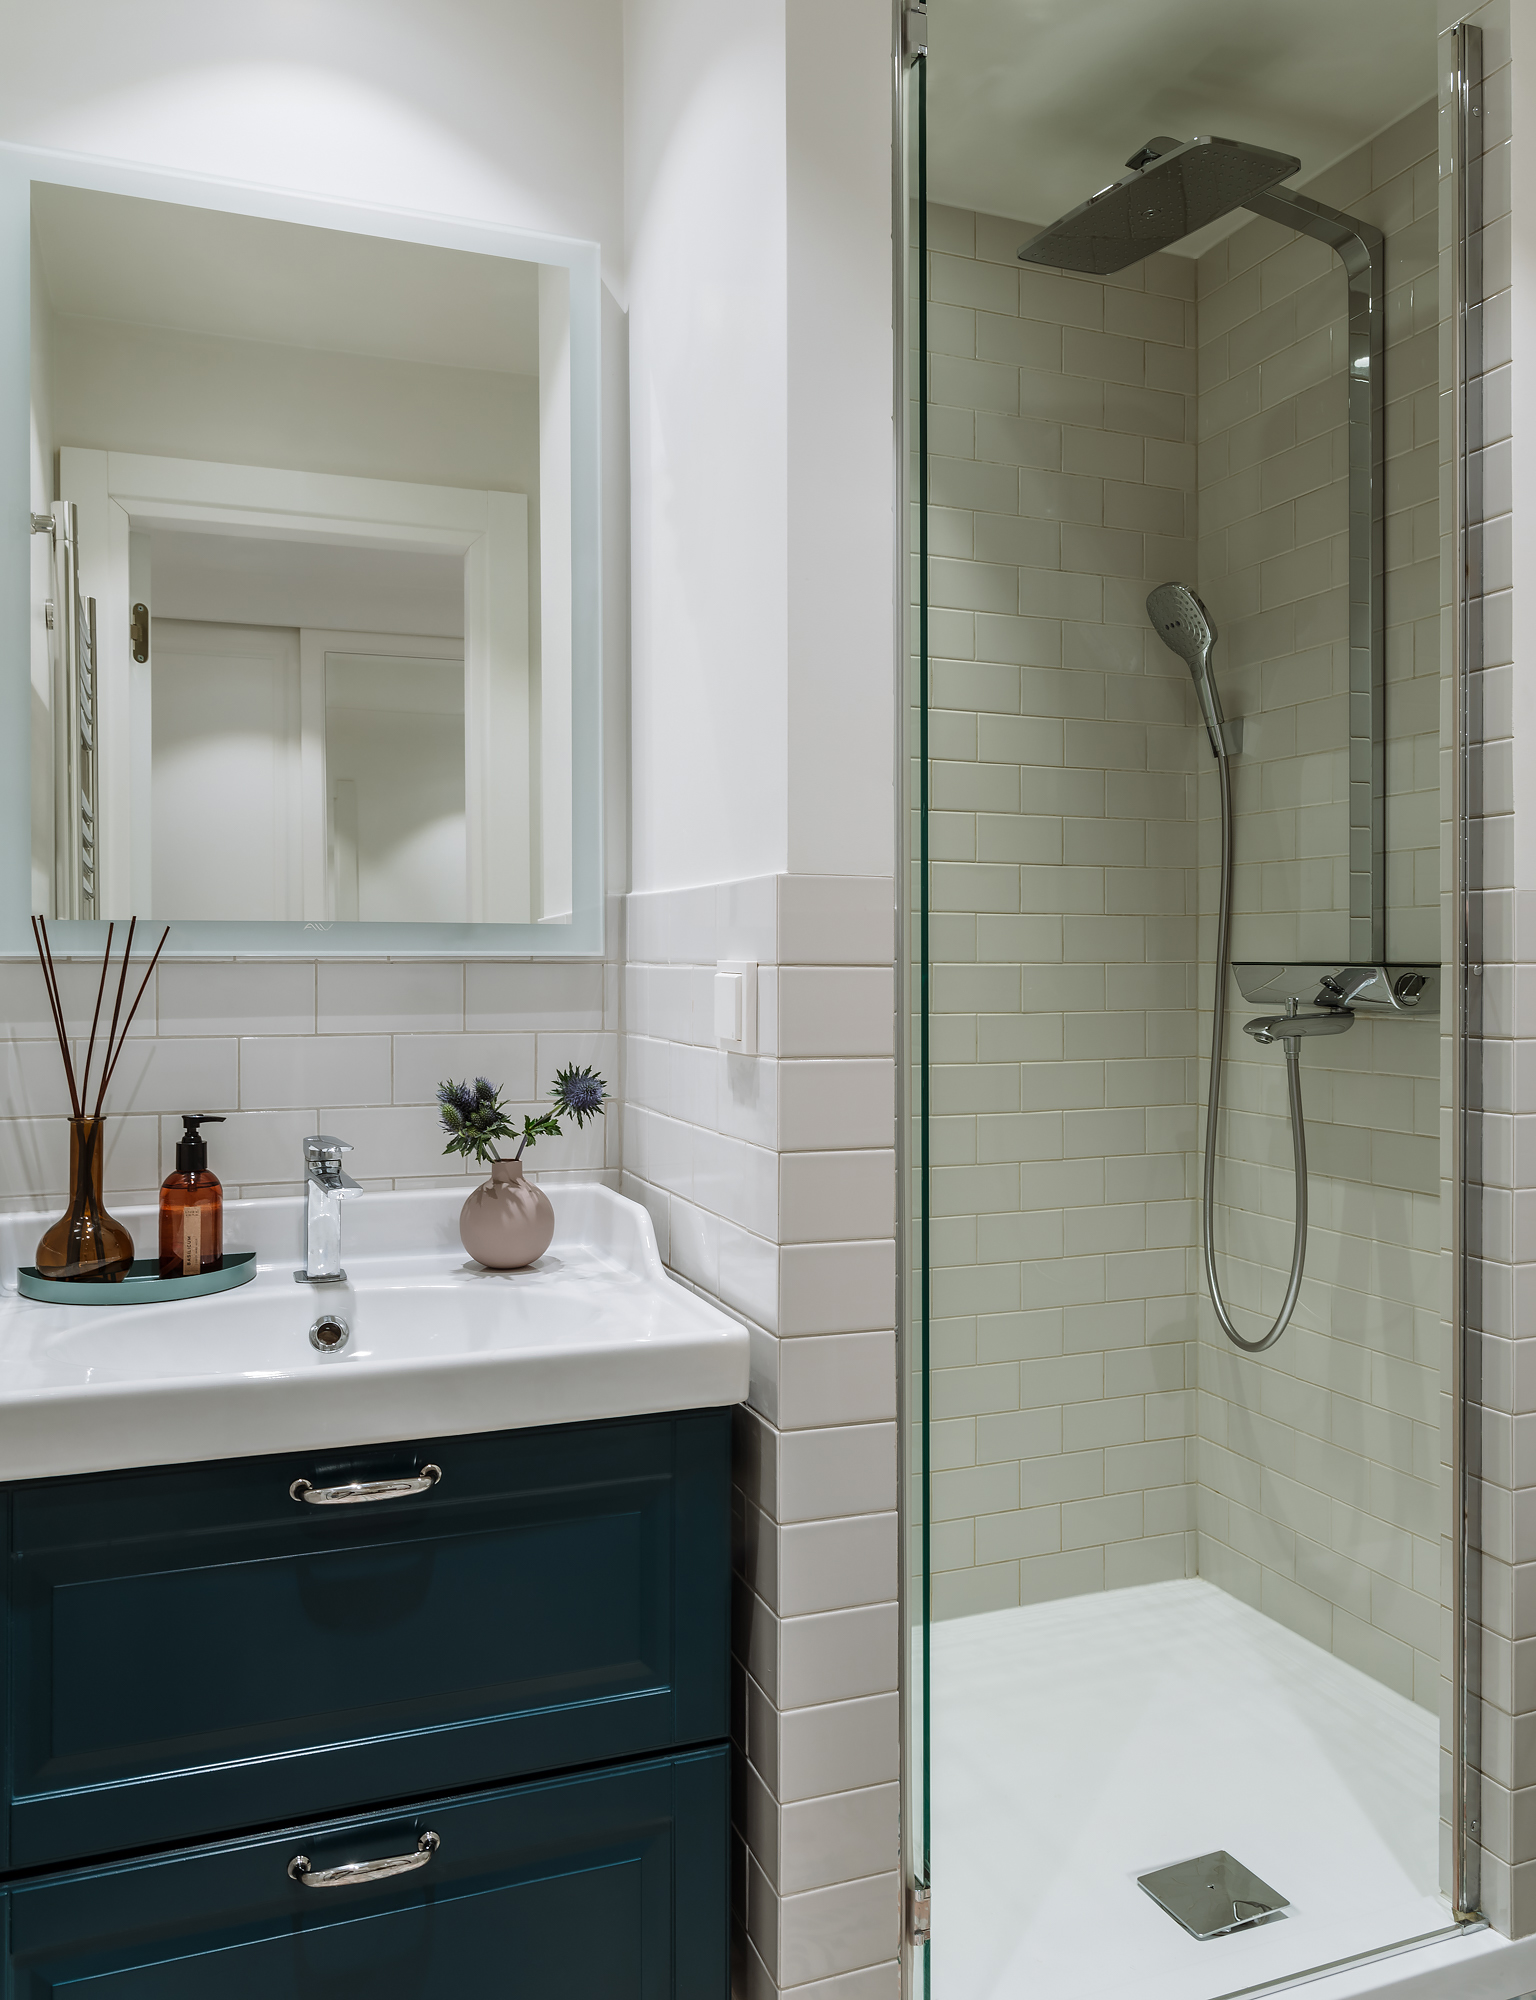 Phòng tắm và nhà vệ sinh nhỏ hẹp nhưng vẫn tinh tế với tủ vanity màu xanh cổ vịt đậm, lọ tinh dầu tỏa hương trên bệ bồn rửa. Riêng buồng tắm vòi sen được phân vùng bằng cửa trượt kính trong suốt.